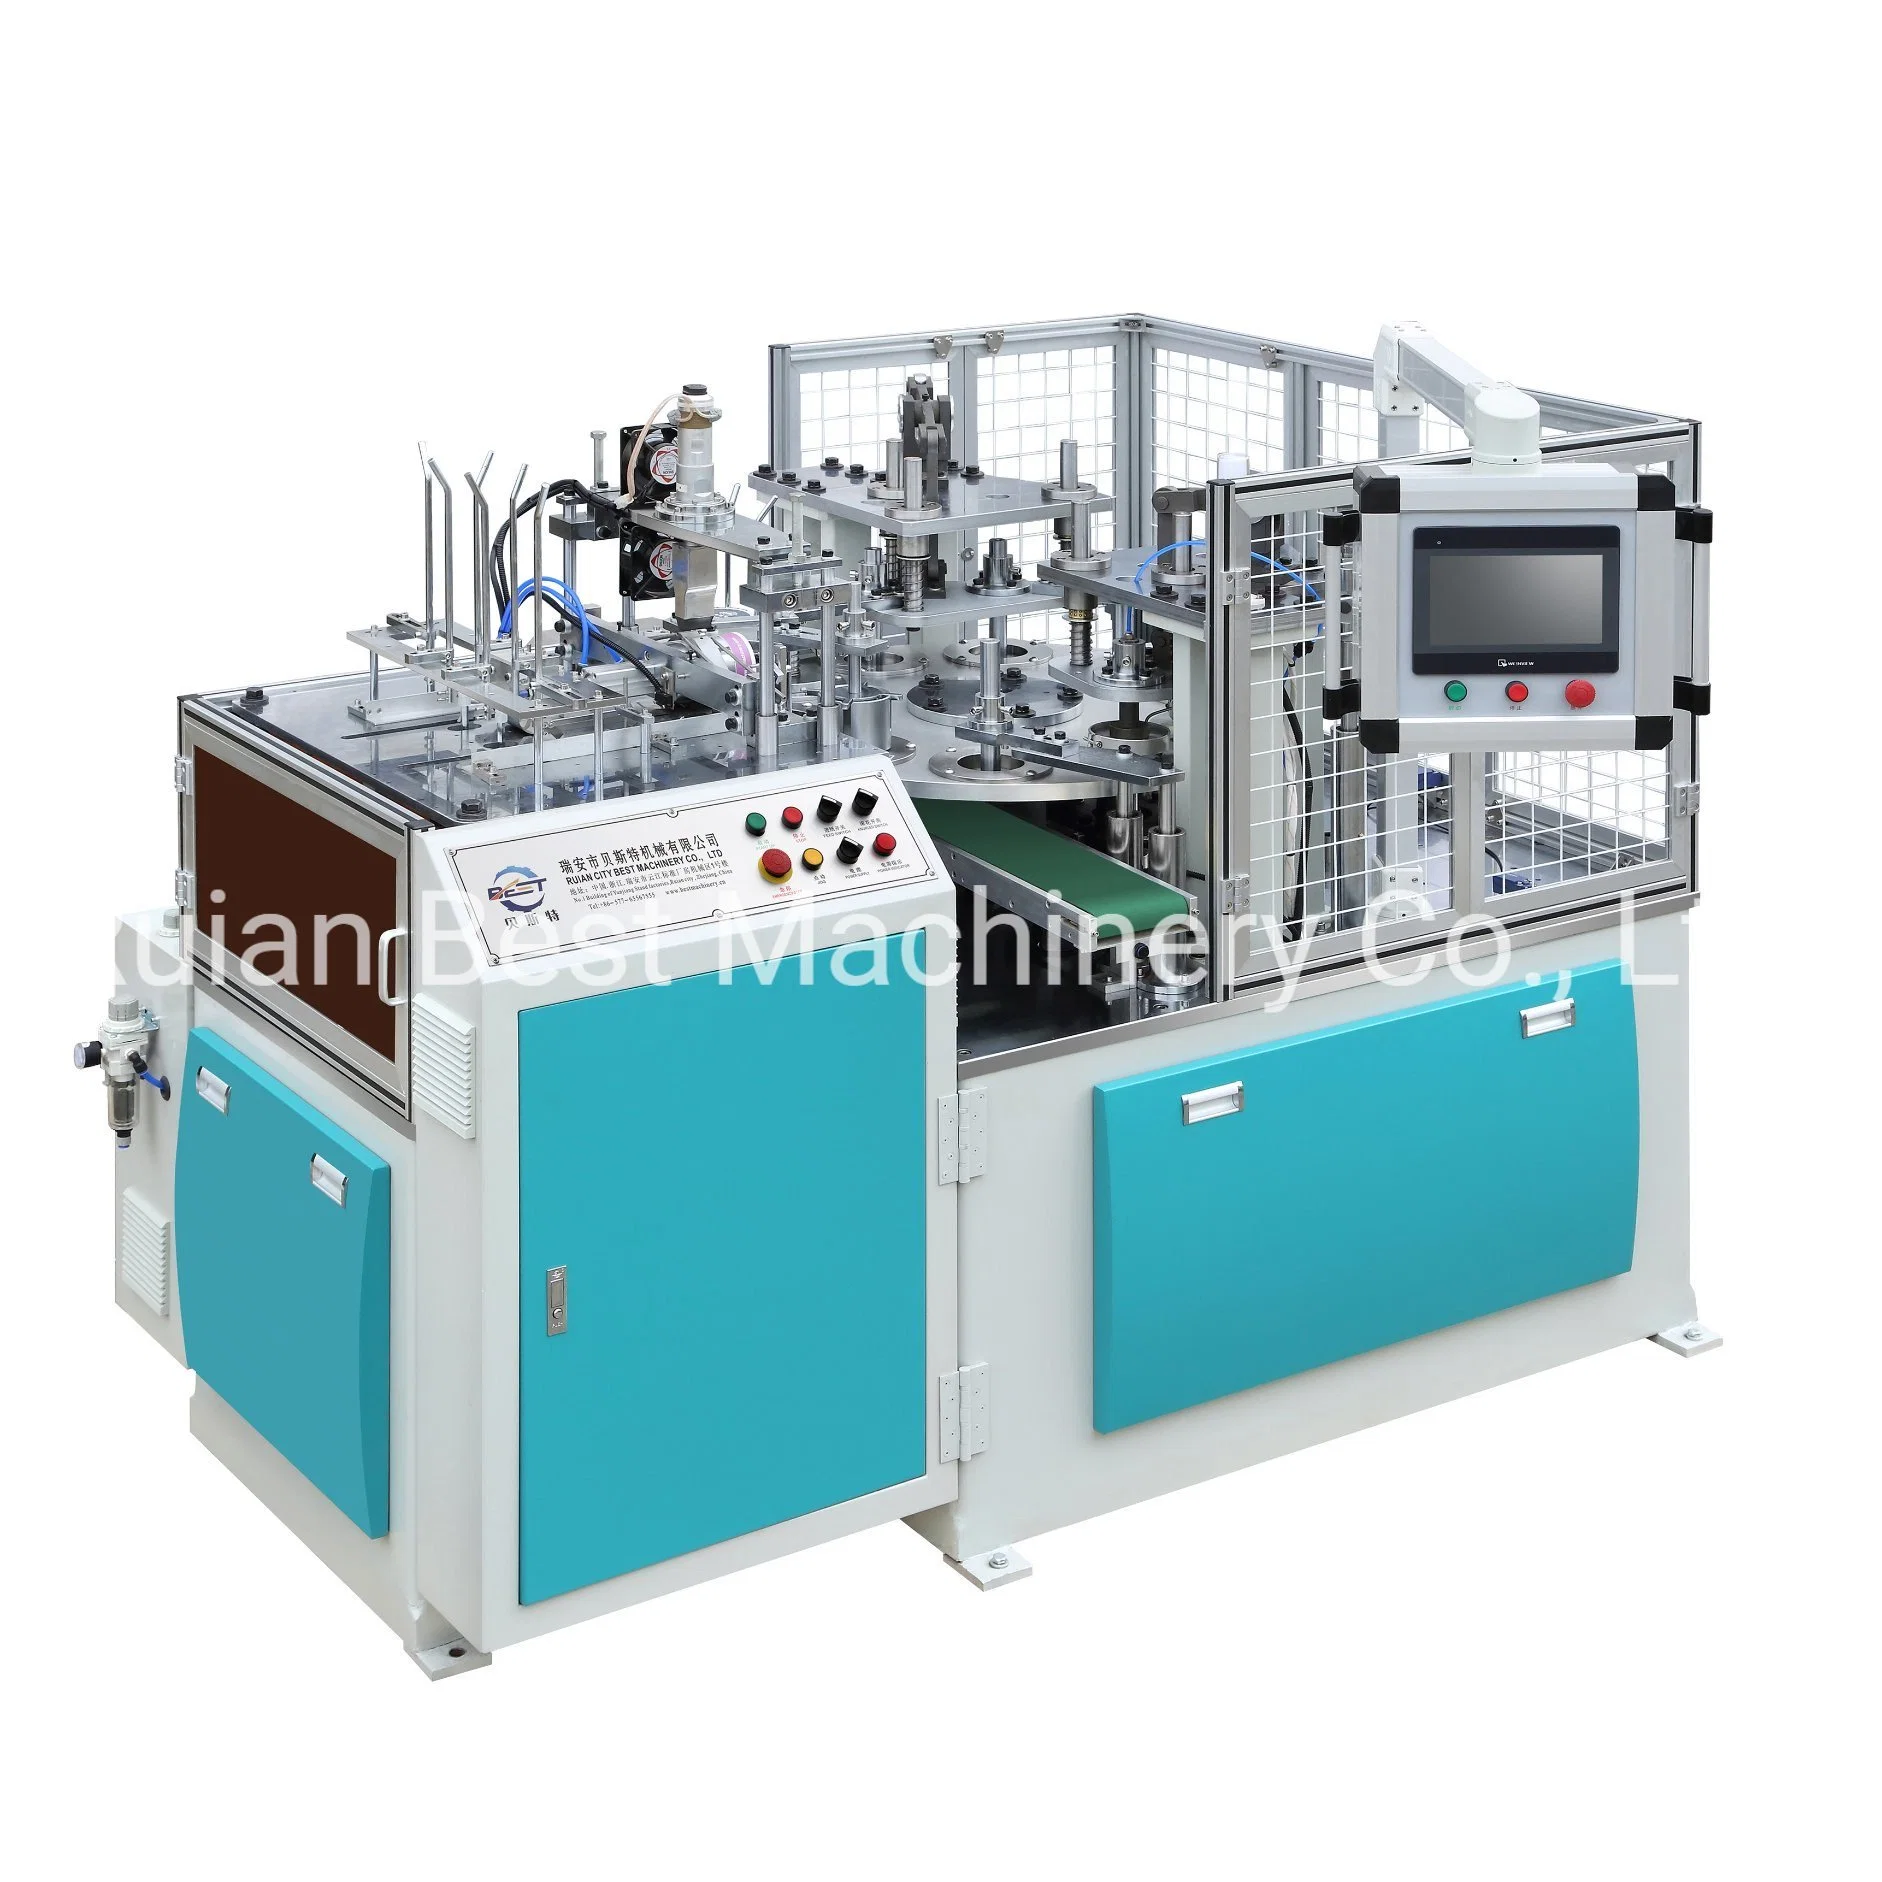 Papierdeckel Maschine mit CE / Papierdeckel Formmaschine / Automatische Deckel Maschine / hoch Geschwindigkeit Papier Cup Deckel Formmaschine